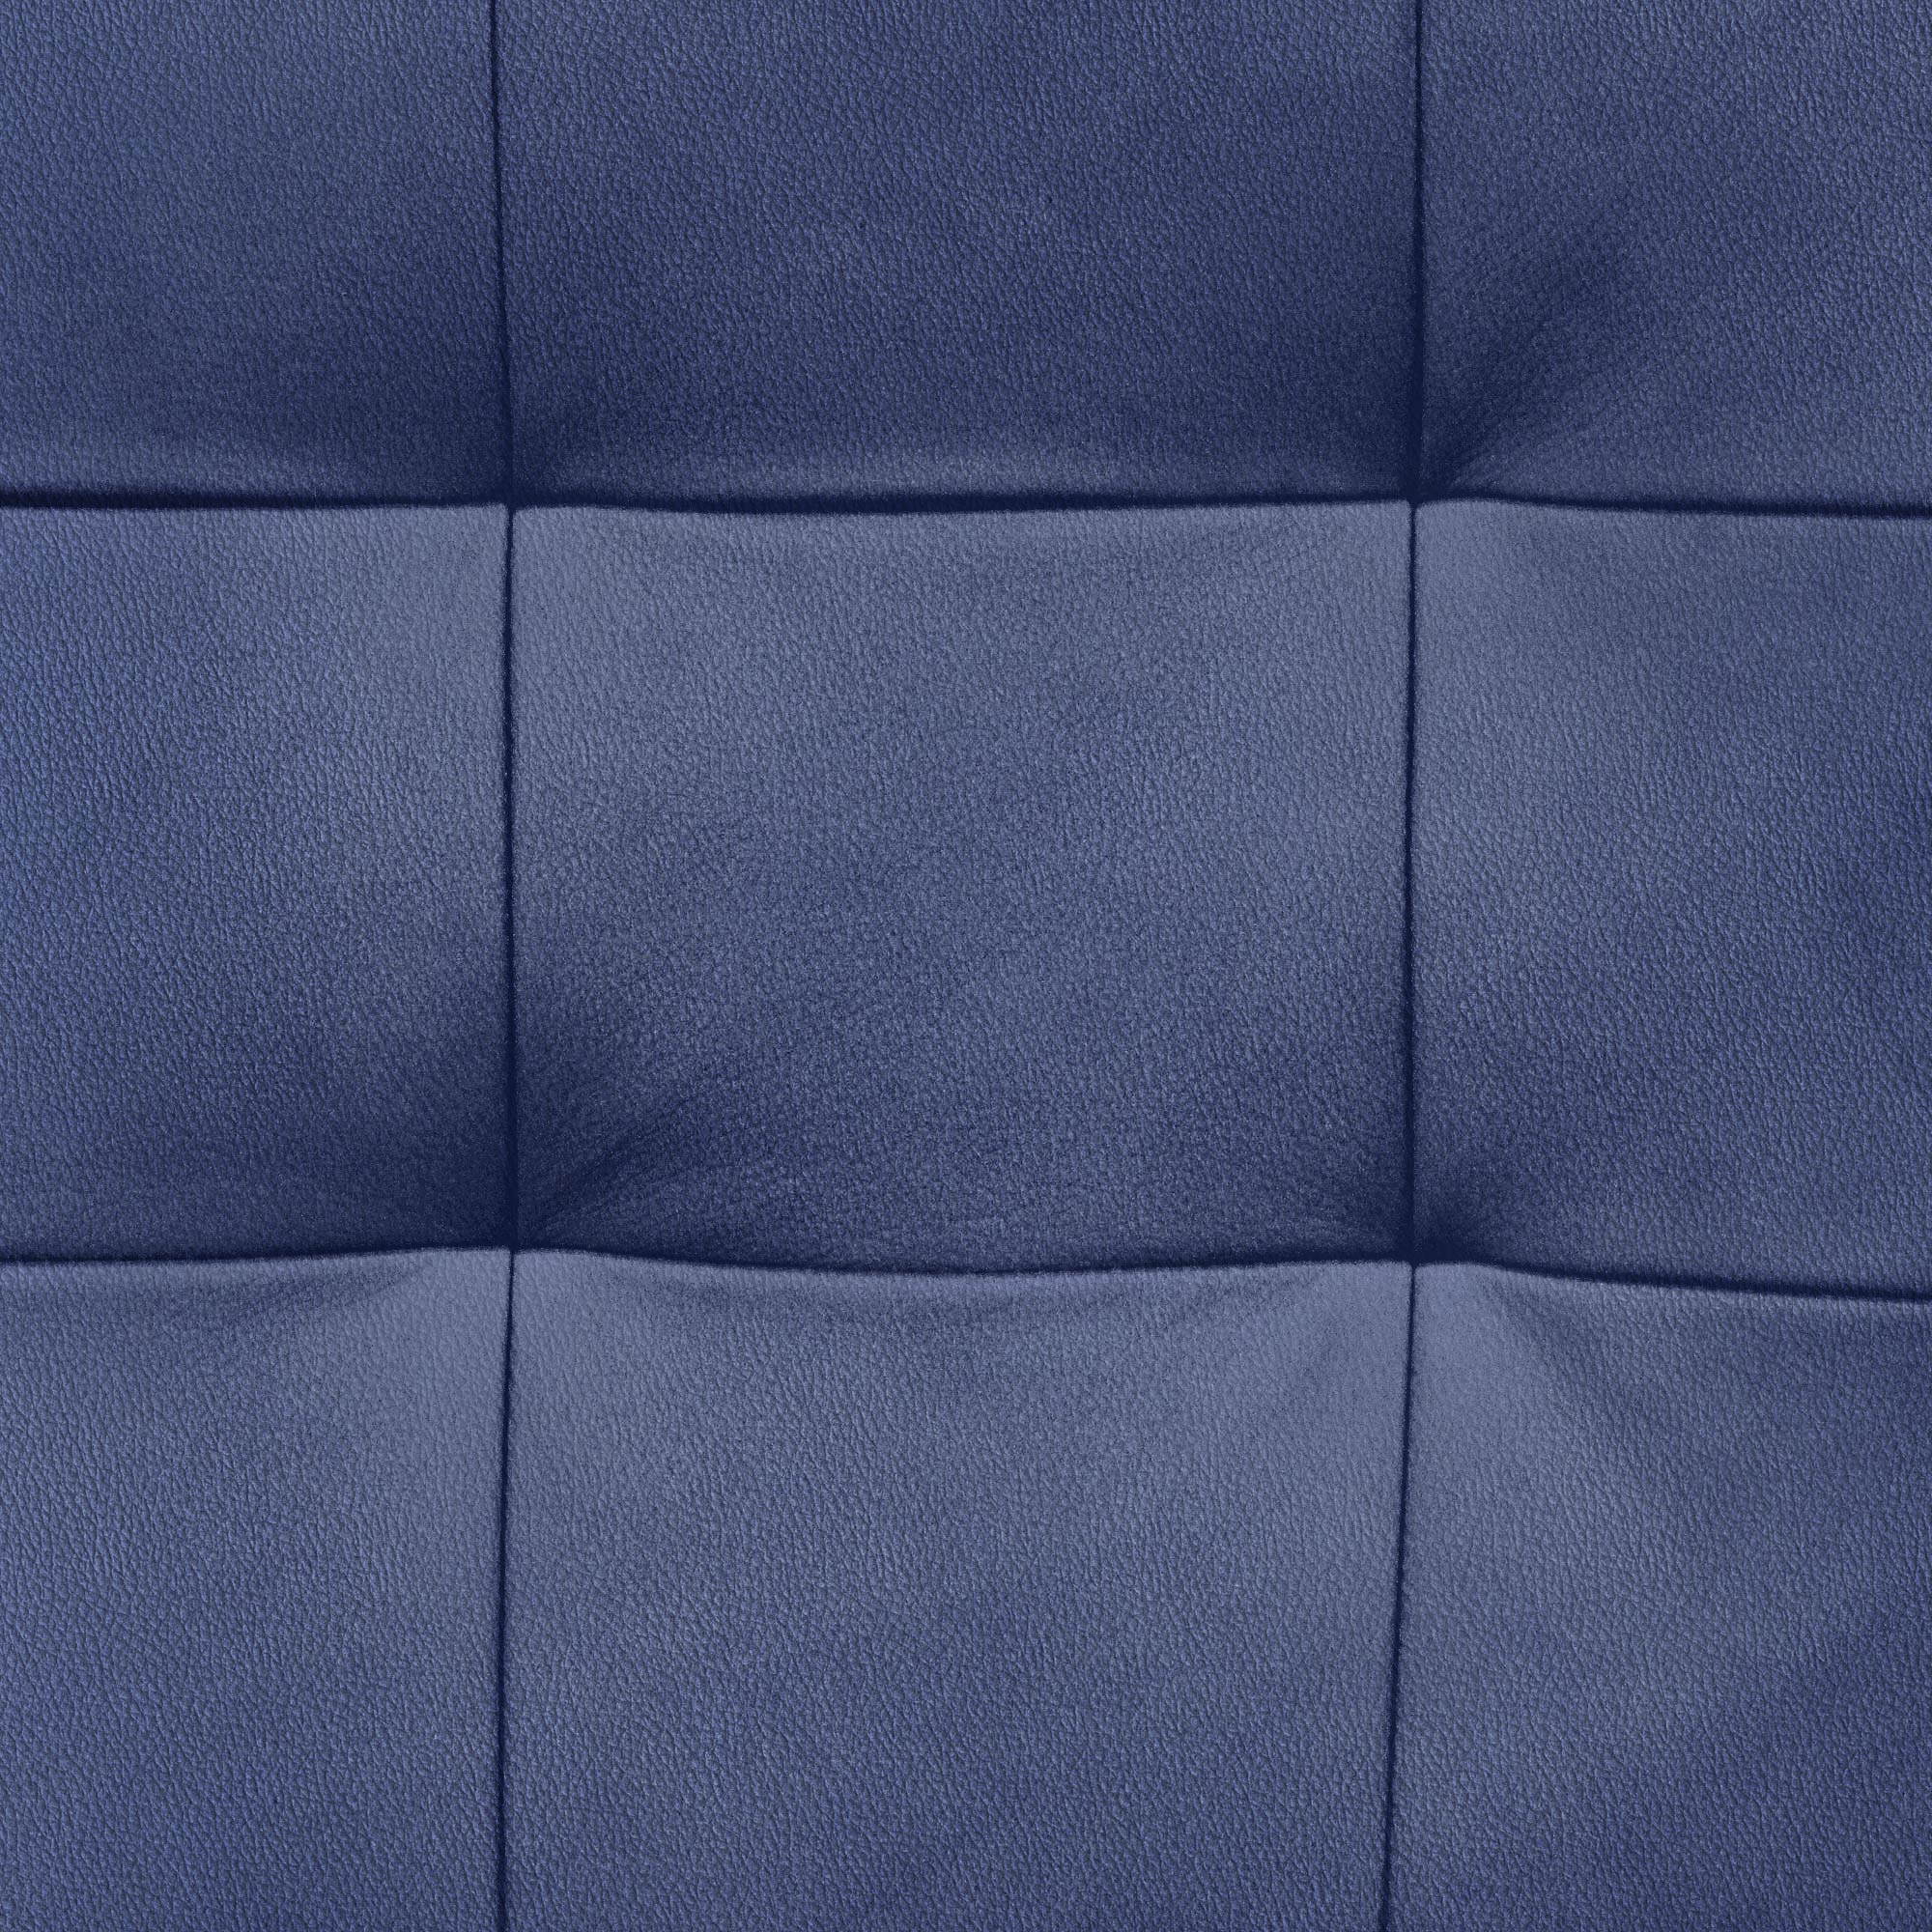 фото Диван фс нубия натуральная кожа синий реверсивный угол 230x152x86